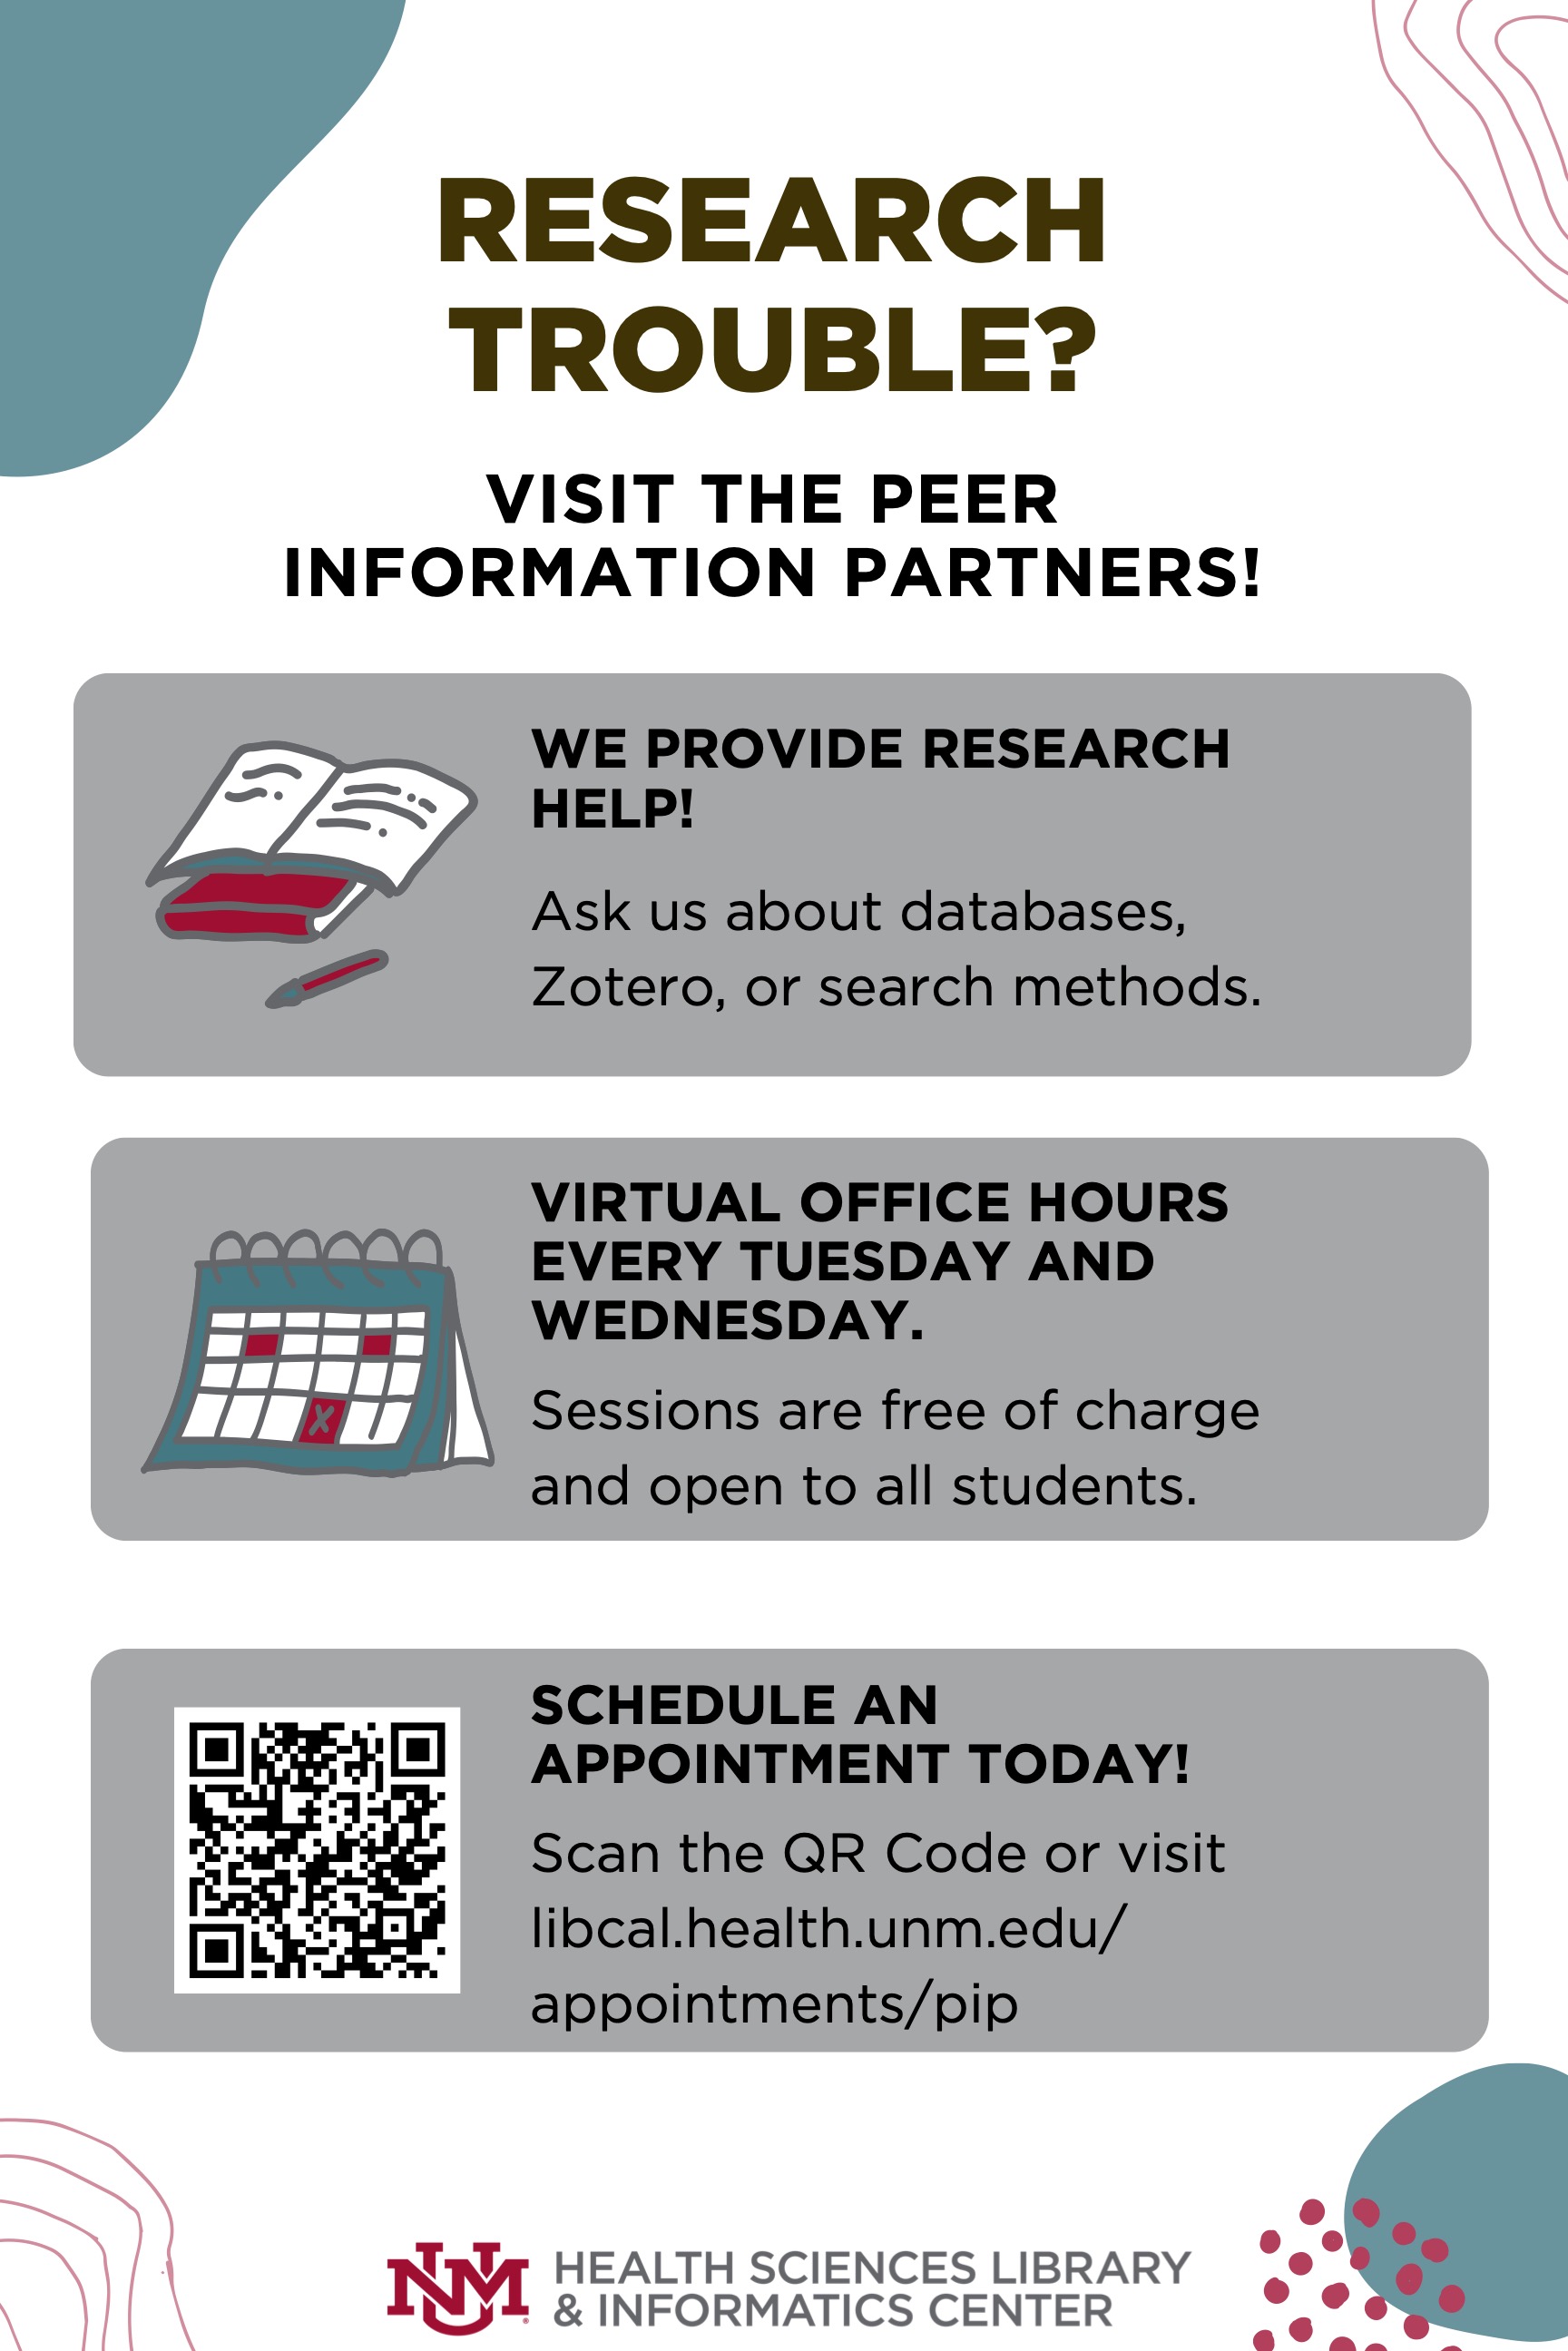 Флаер для помощи в исследованиях от Peer Information Partners, бесплатные сеансы и виртуальные рабочие часы каждый вторник и среду. Посетите libcal.health.unm.edu/appointments/pip для получения дополнительной информации